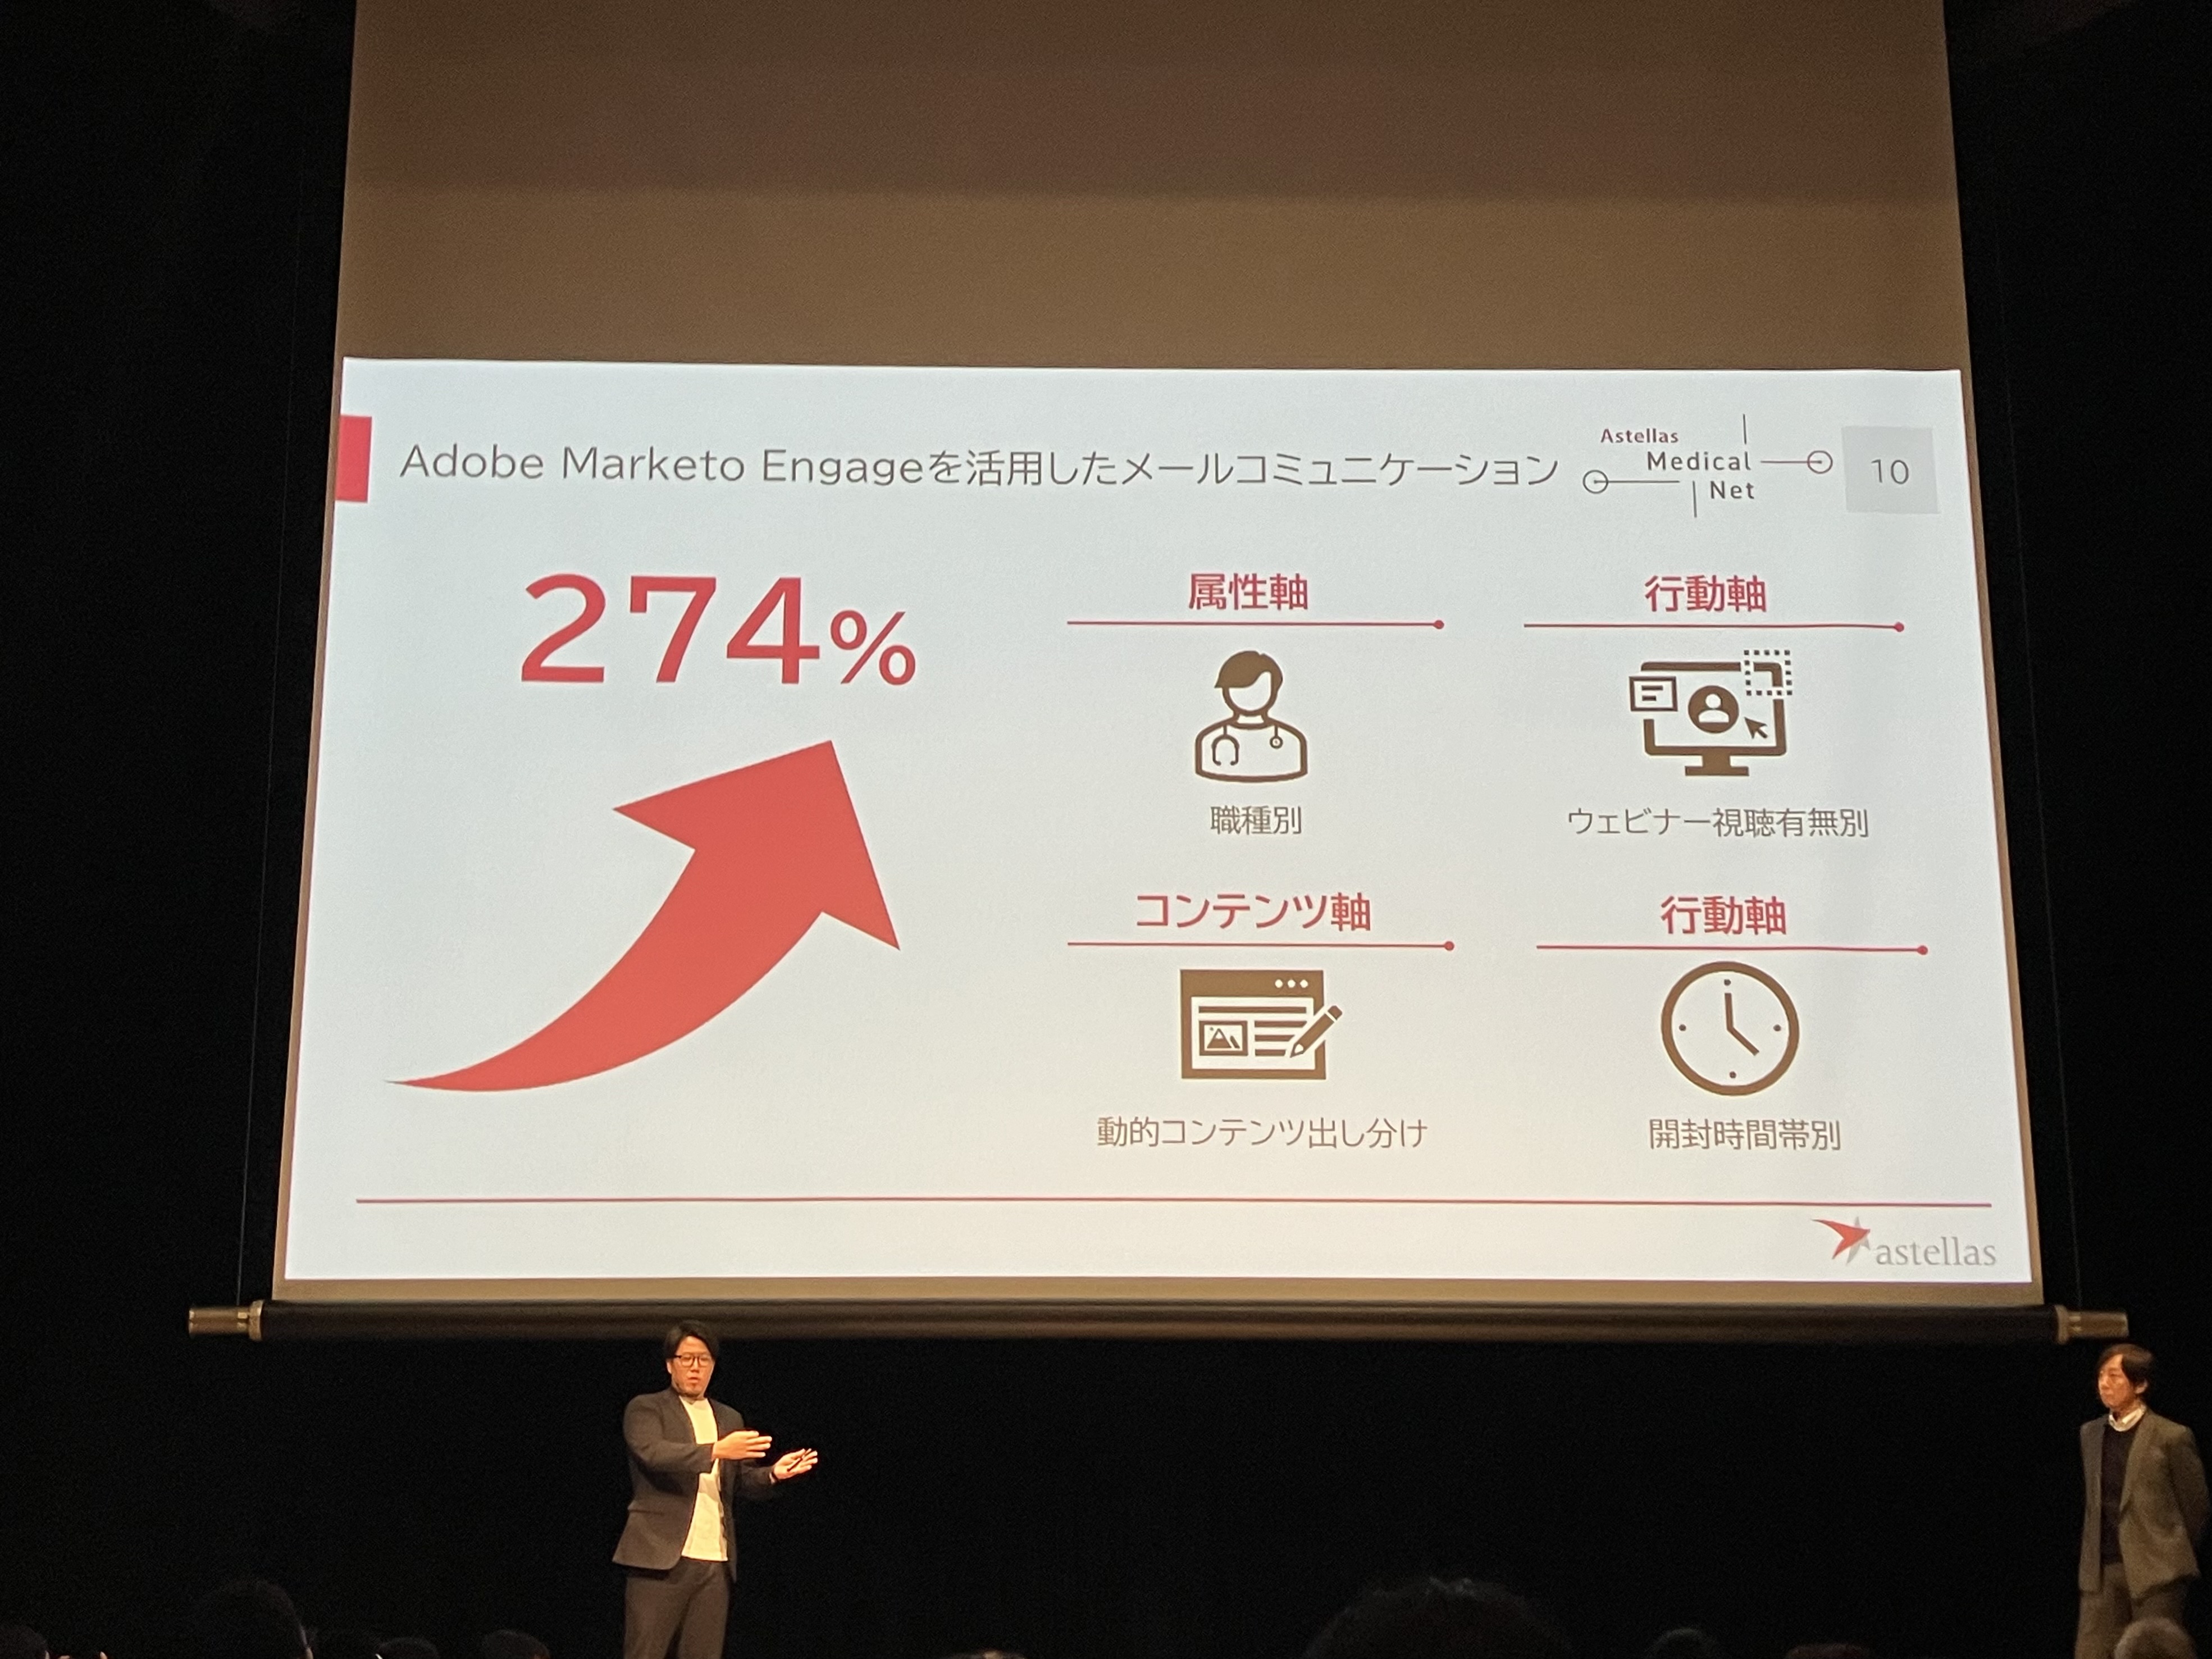 Adobe Marketo Engage経由でオウンドメディアに訪問したリードが274％増加